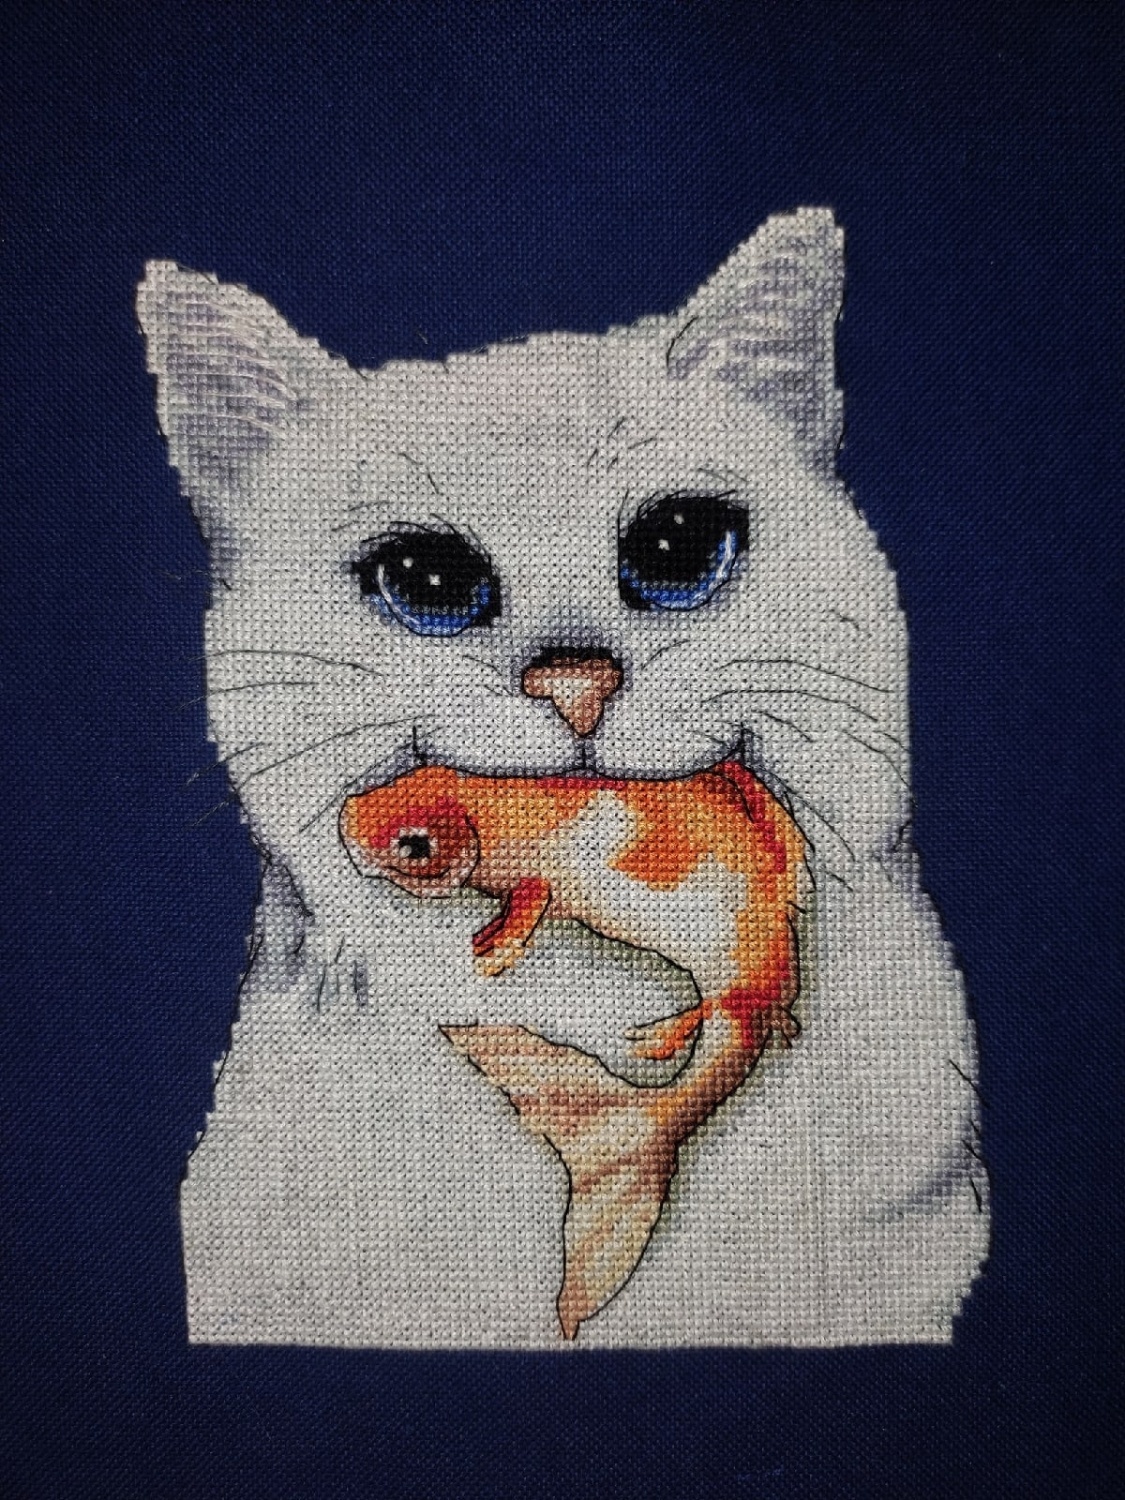 Love 2 Fish (w/charm) - Cross Stitch Pattern